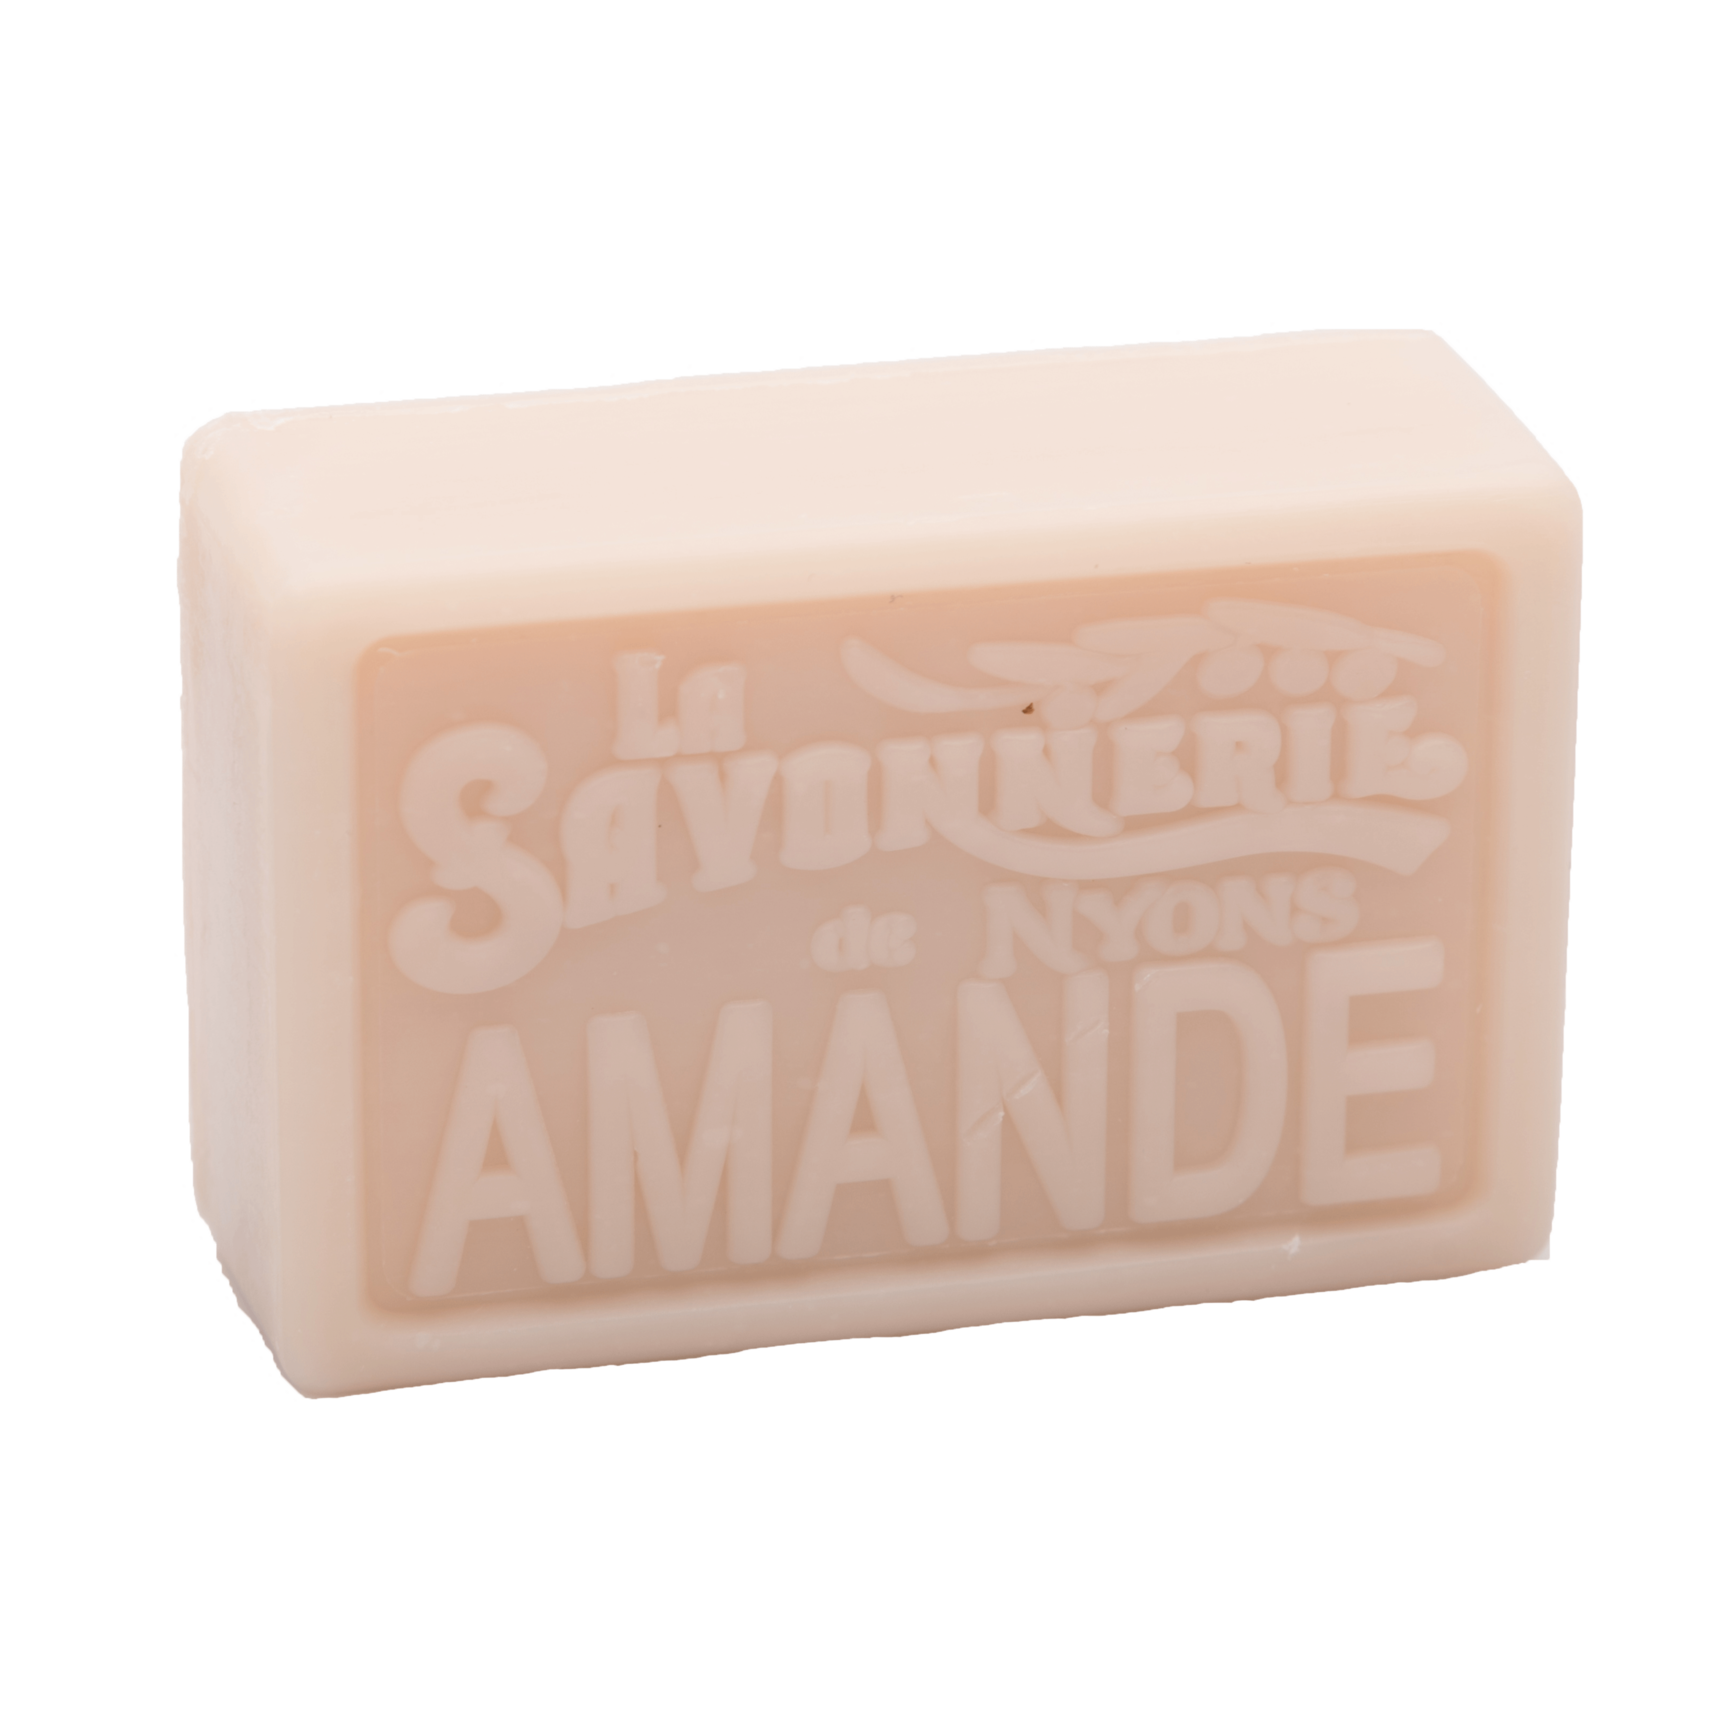 Tan bar of soap that reads La Savonnerie de Nyons Amande.